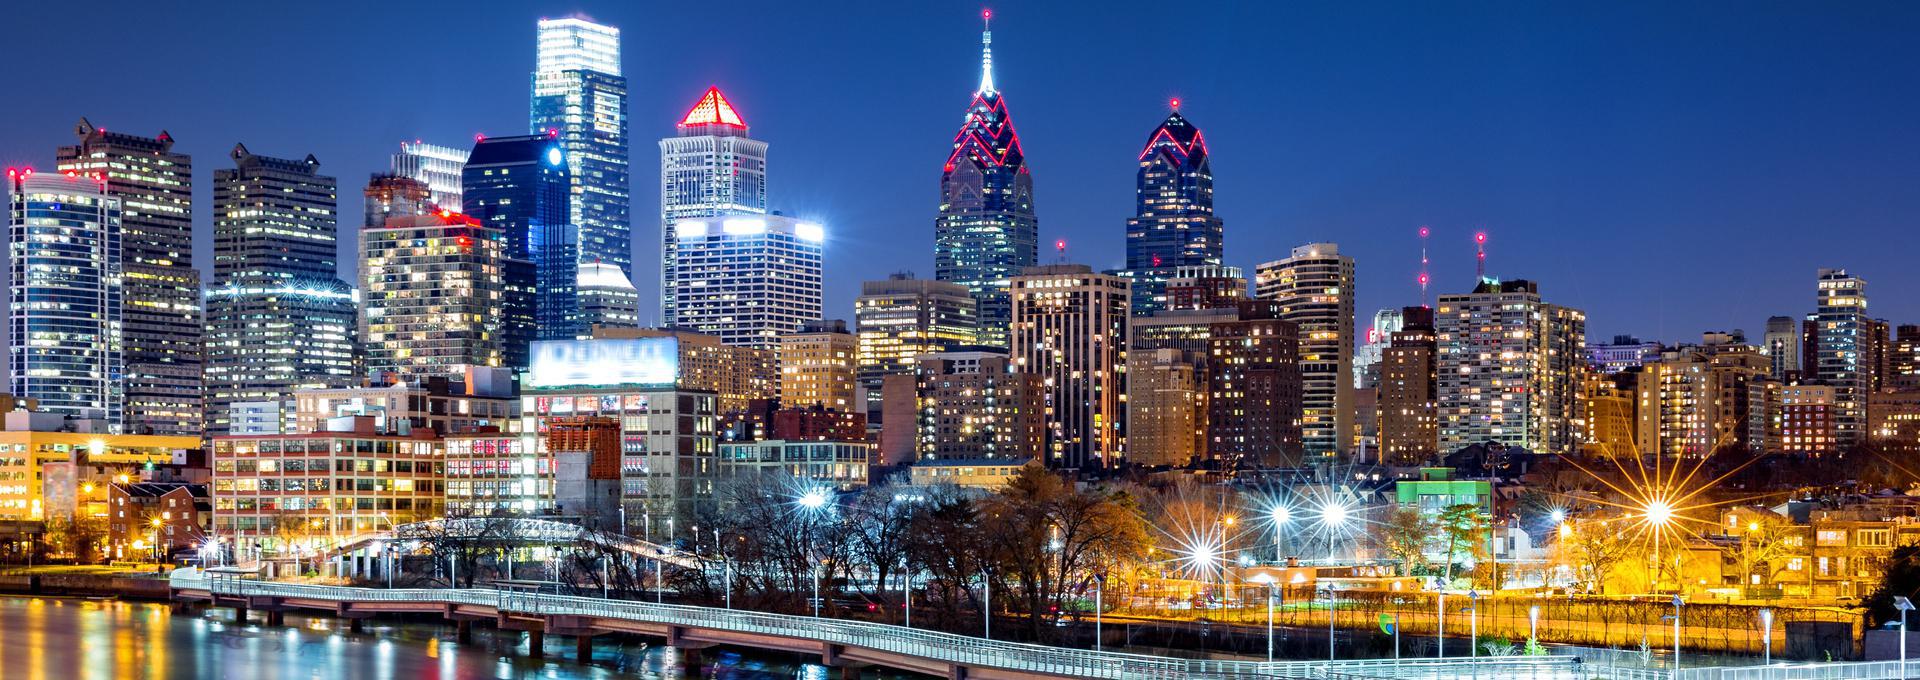 Philadelphia - 